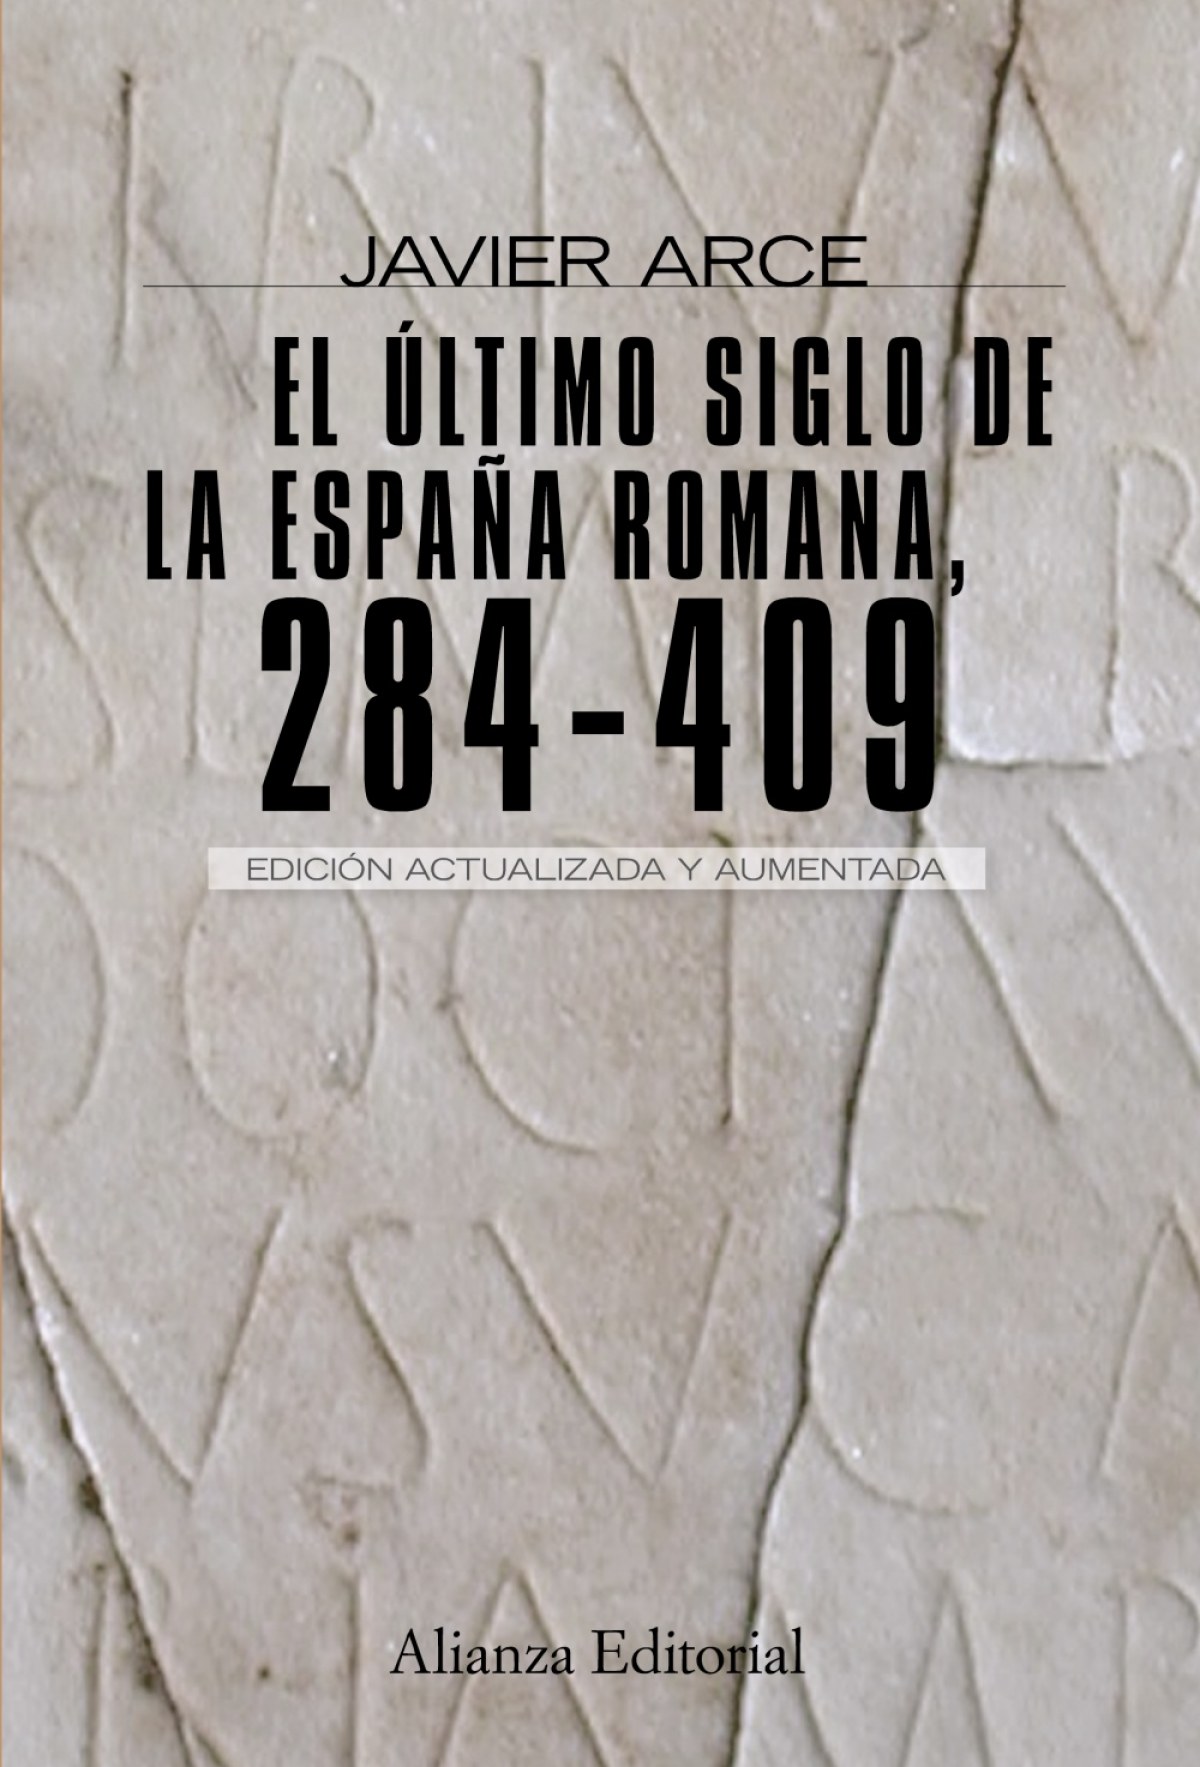 El ultimo siglo de la España romana (284-409) - Arce, Javier